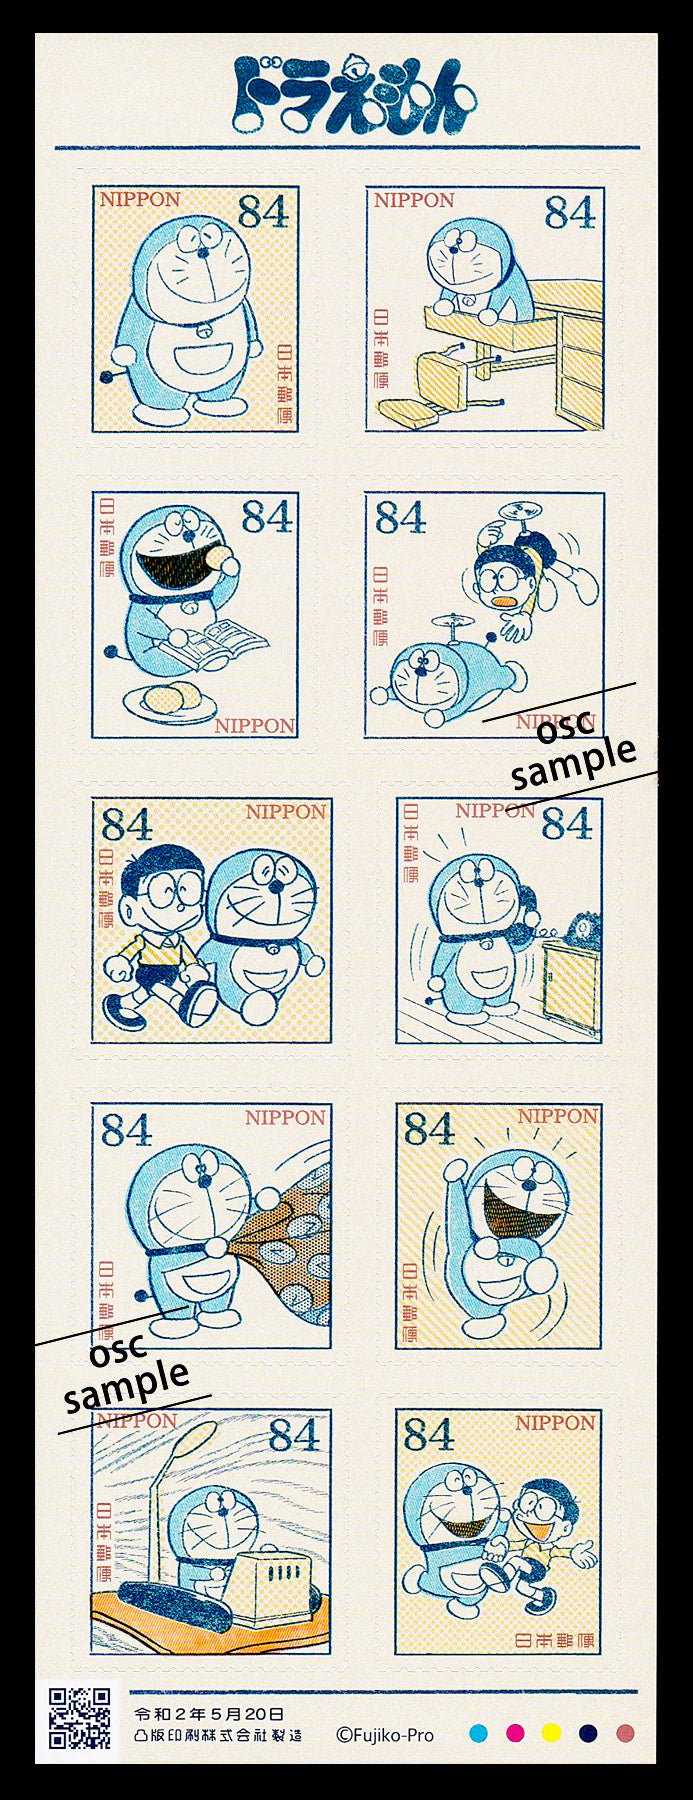 Doraemon (2020, 84yen)